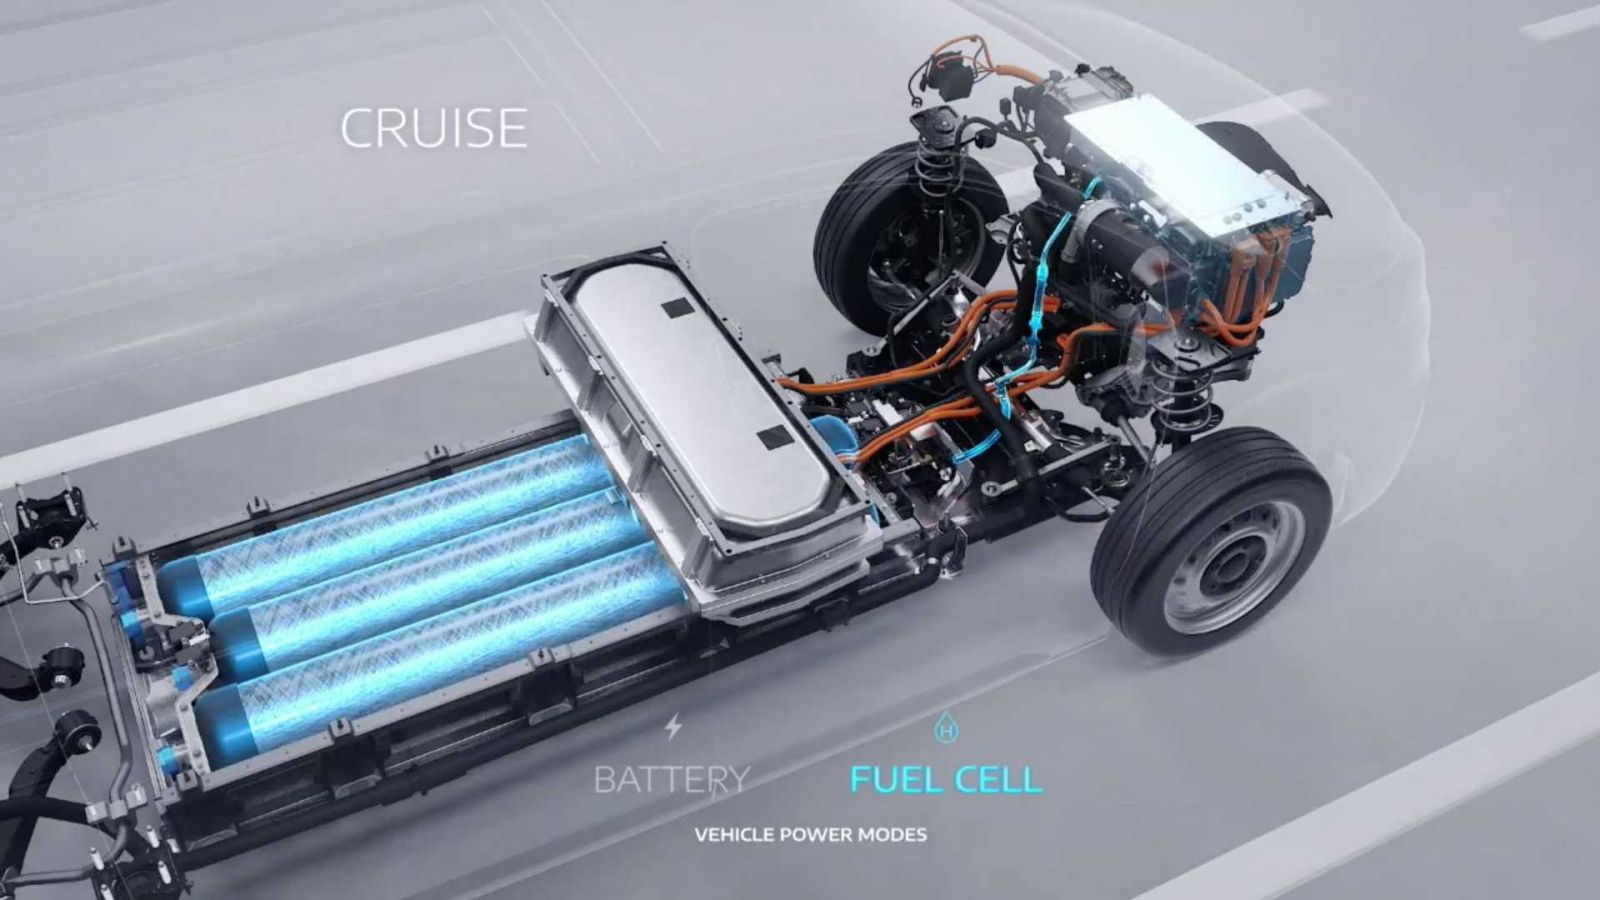 Il dado è tratto: idrogeno e batterie per i furgoni Stellantis a emissioni locali zero